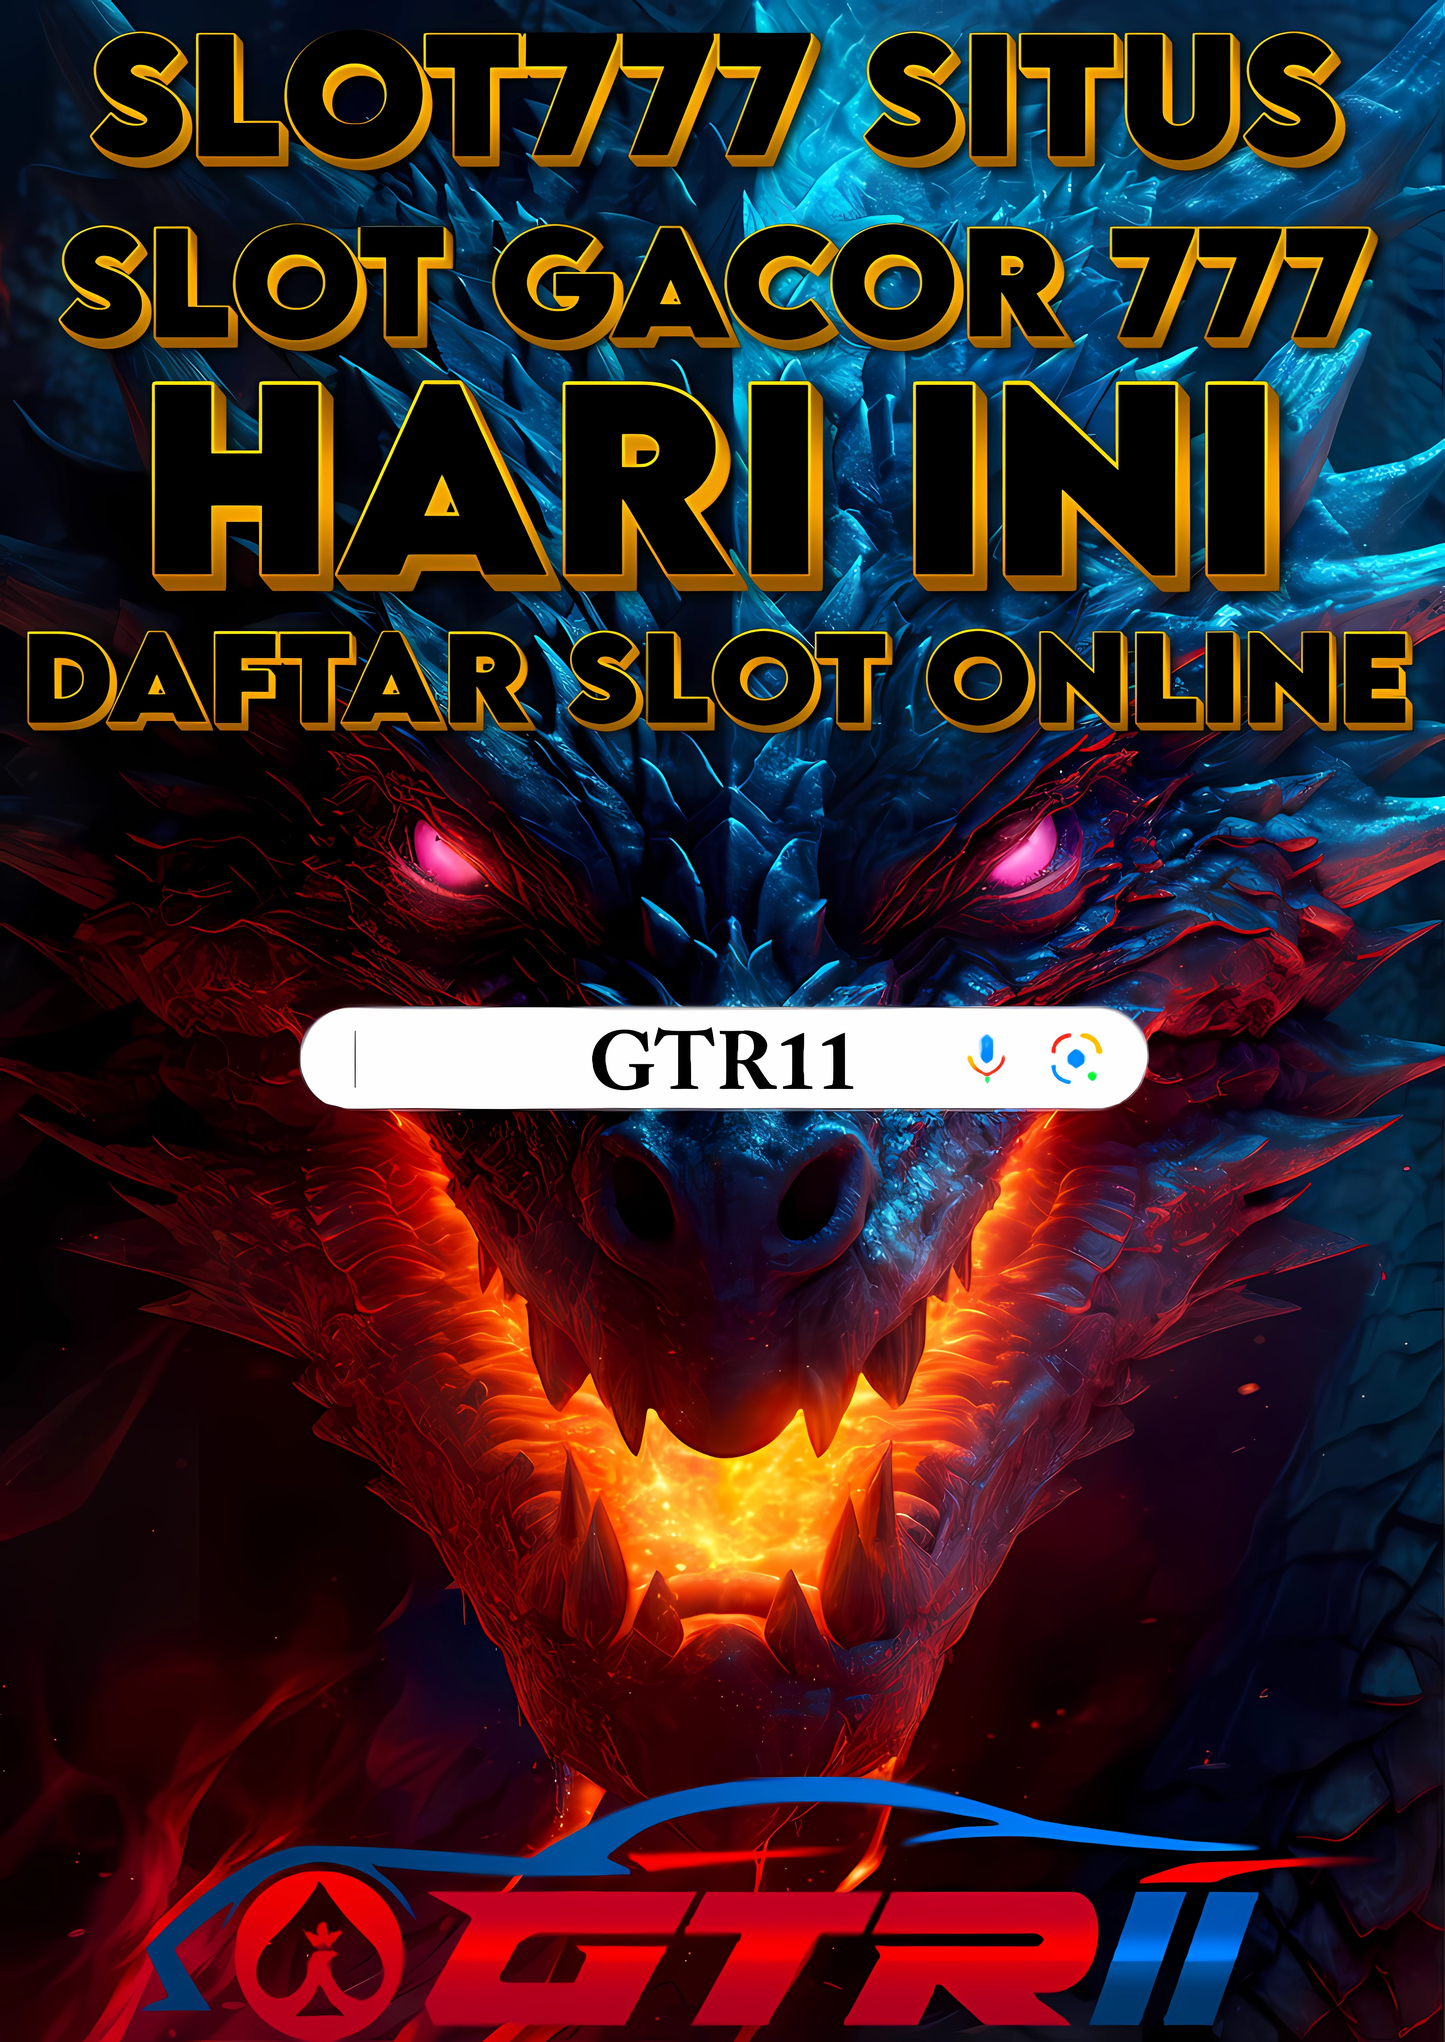 SLOT777: Situs Slot Gacor 777 Super Maxwin Hari Ini Daftar Slot Online Terbaru